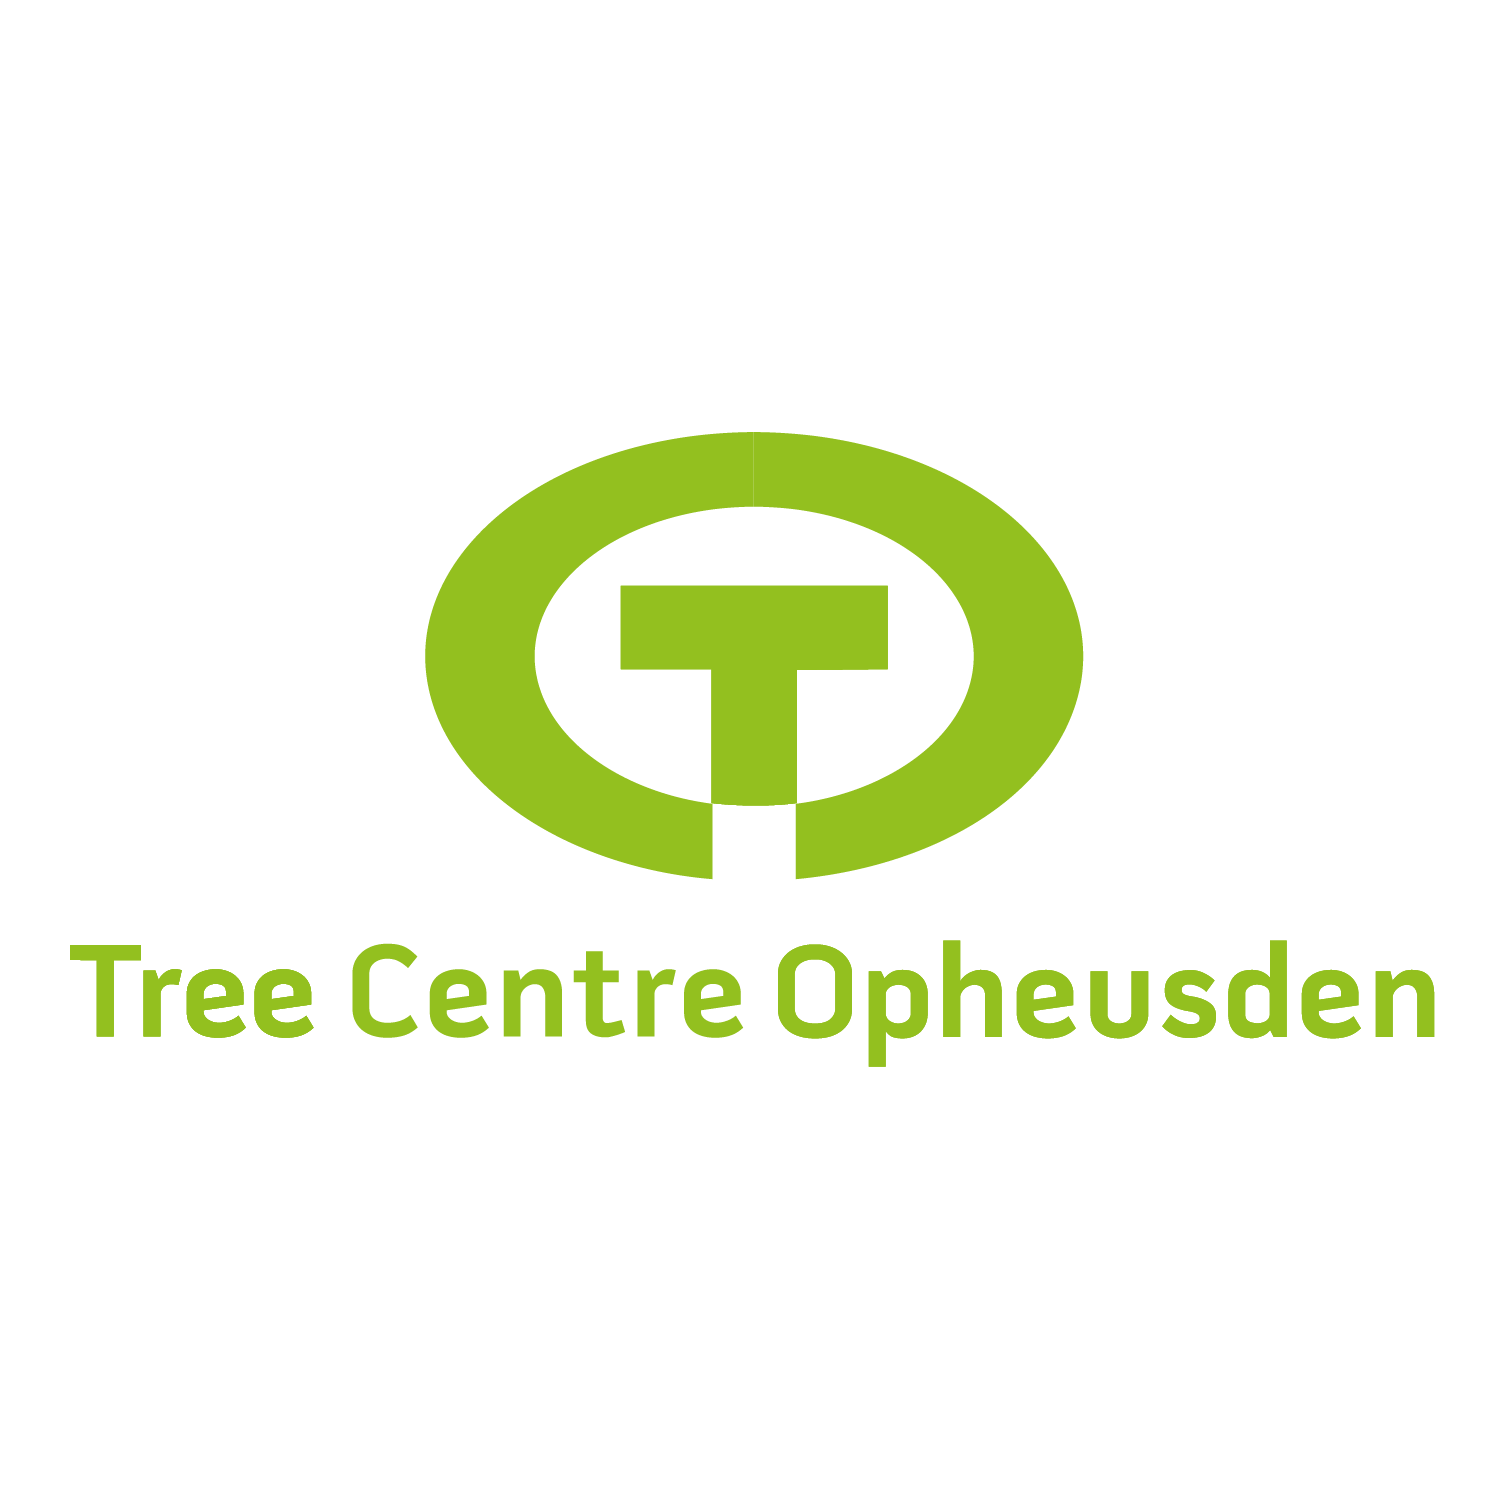 Tree Center Opheusden